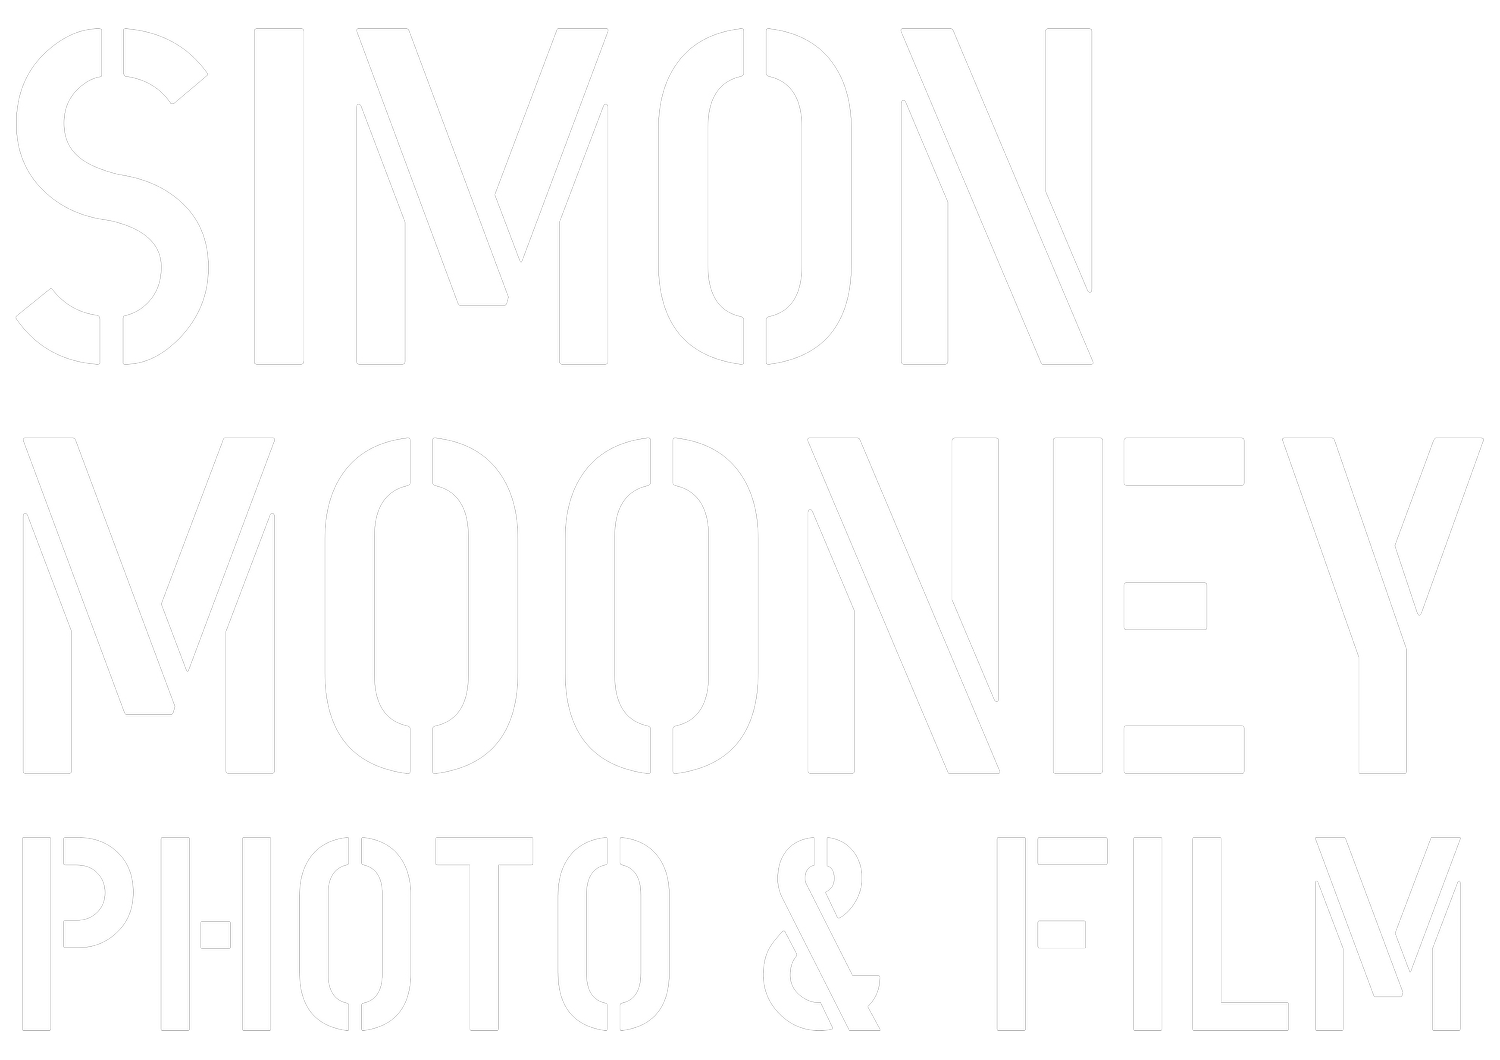 Simon Mooney Photo & Film